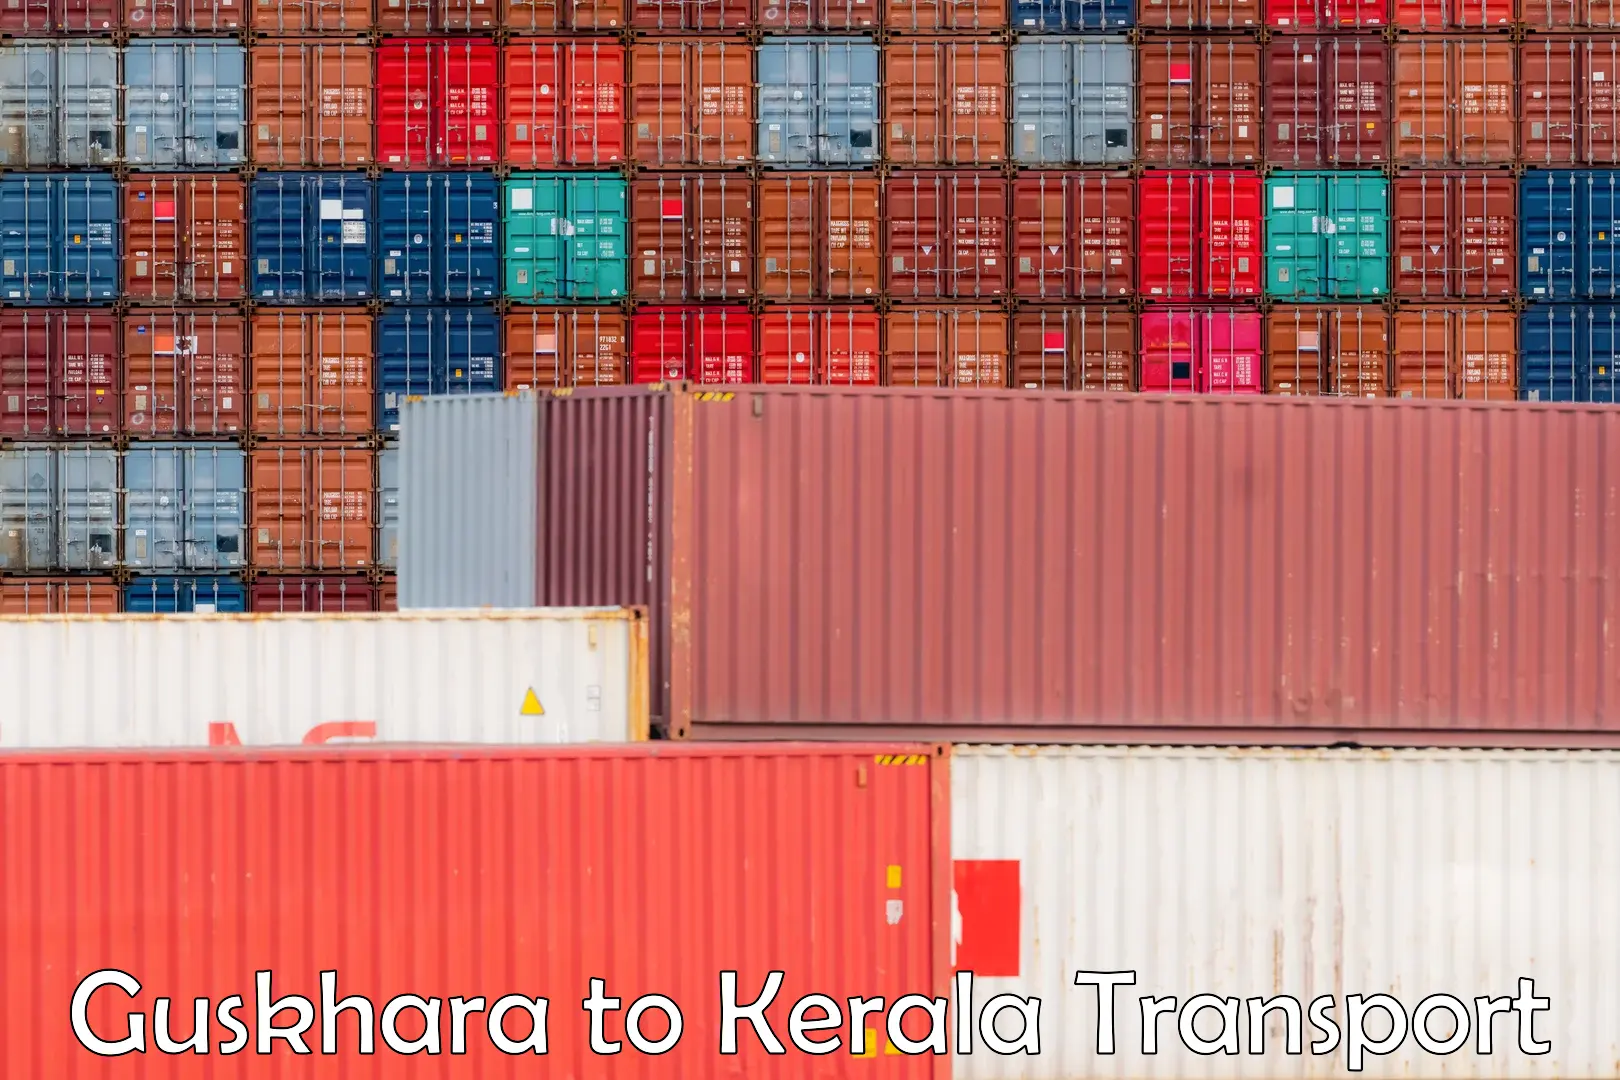 Shipping partner Guskhara to Cherthala